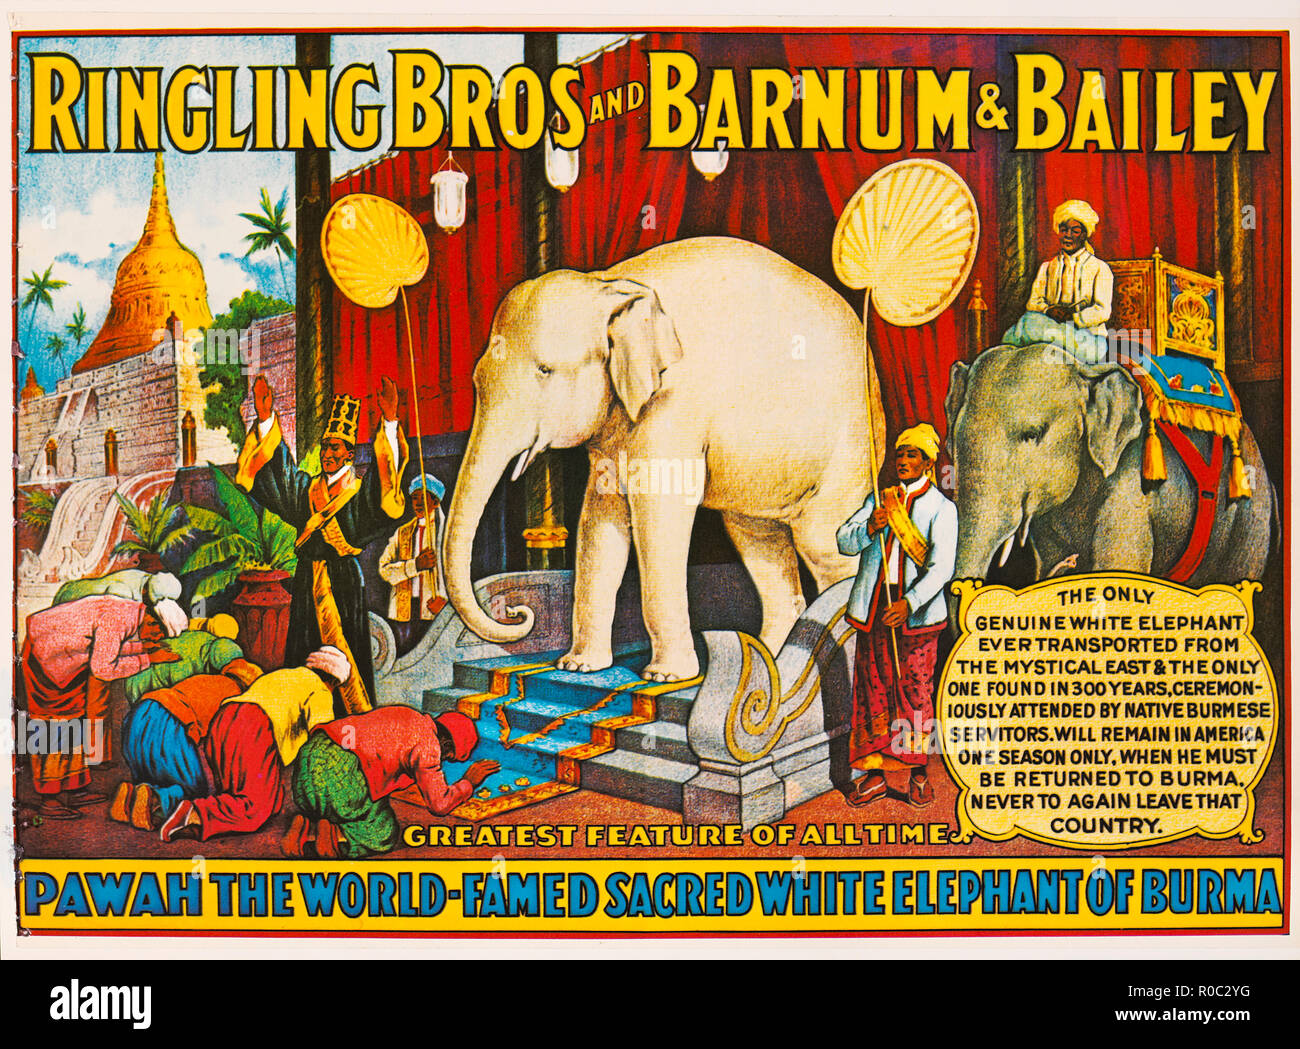 Ringling Bros. und Barnum & Bailey, der Pawah World-Famed Heiligen weißen Elefanten von Birma, Zirkus, Poster, Lithographie, 1927 Stockfoto